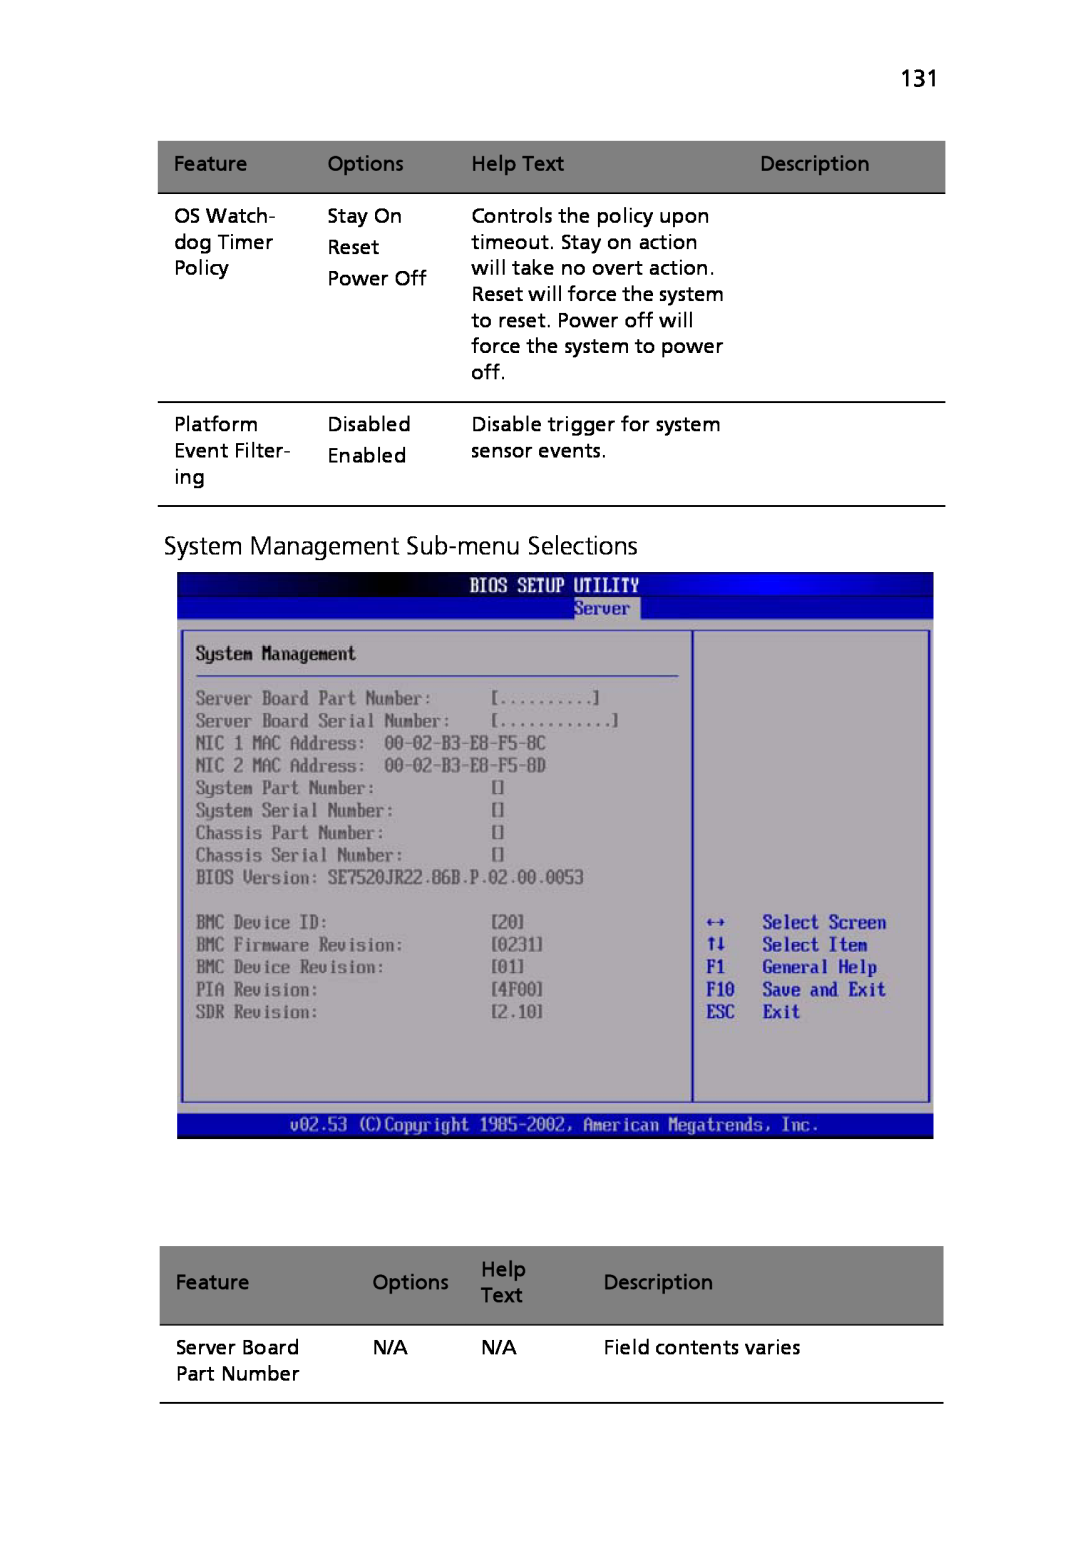 Acer Altos R710 manual System Management Sub-menu Selections 